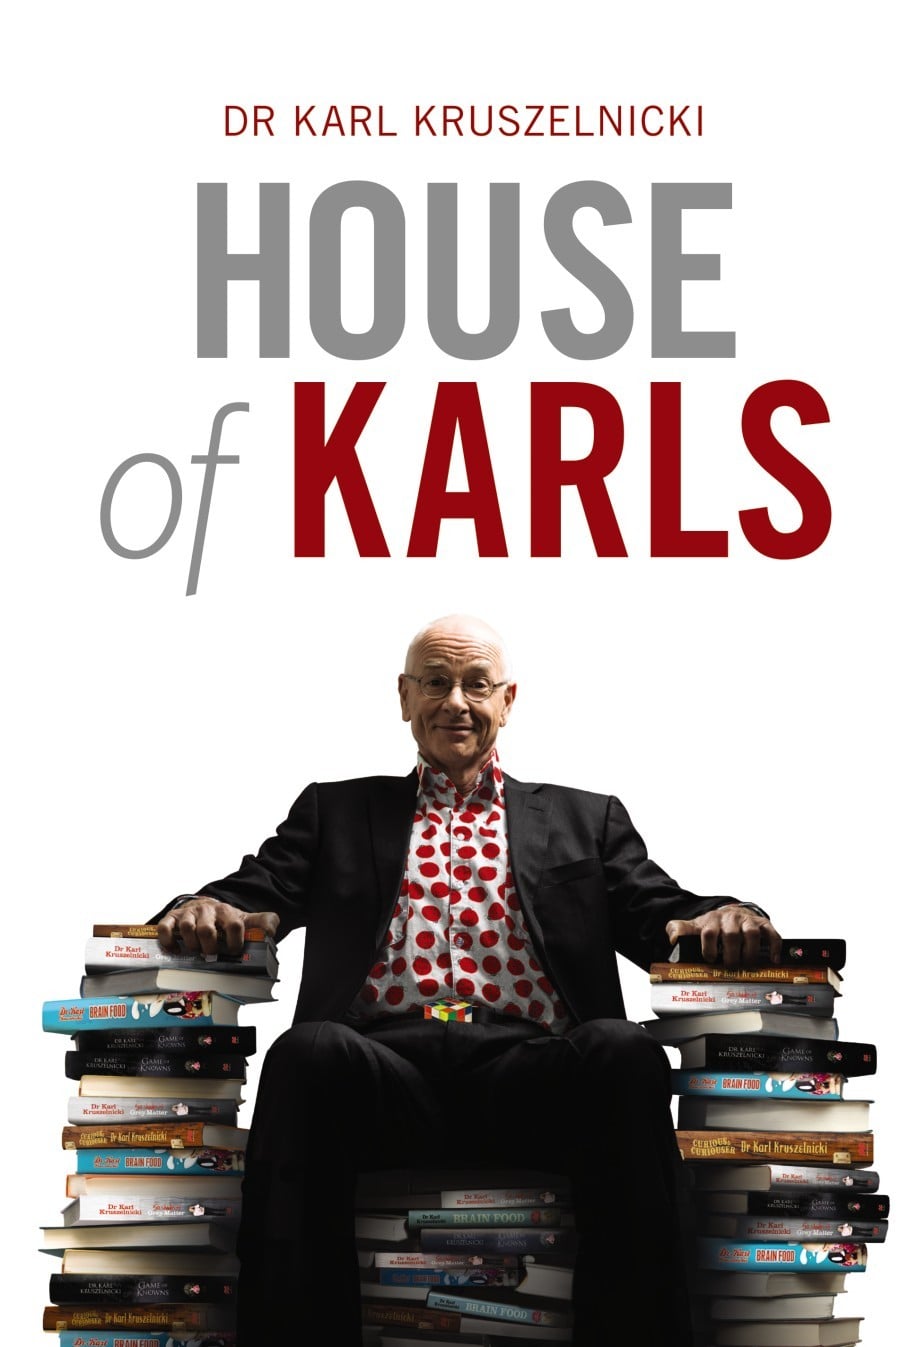 Karl house. Best of Karl.